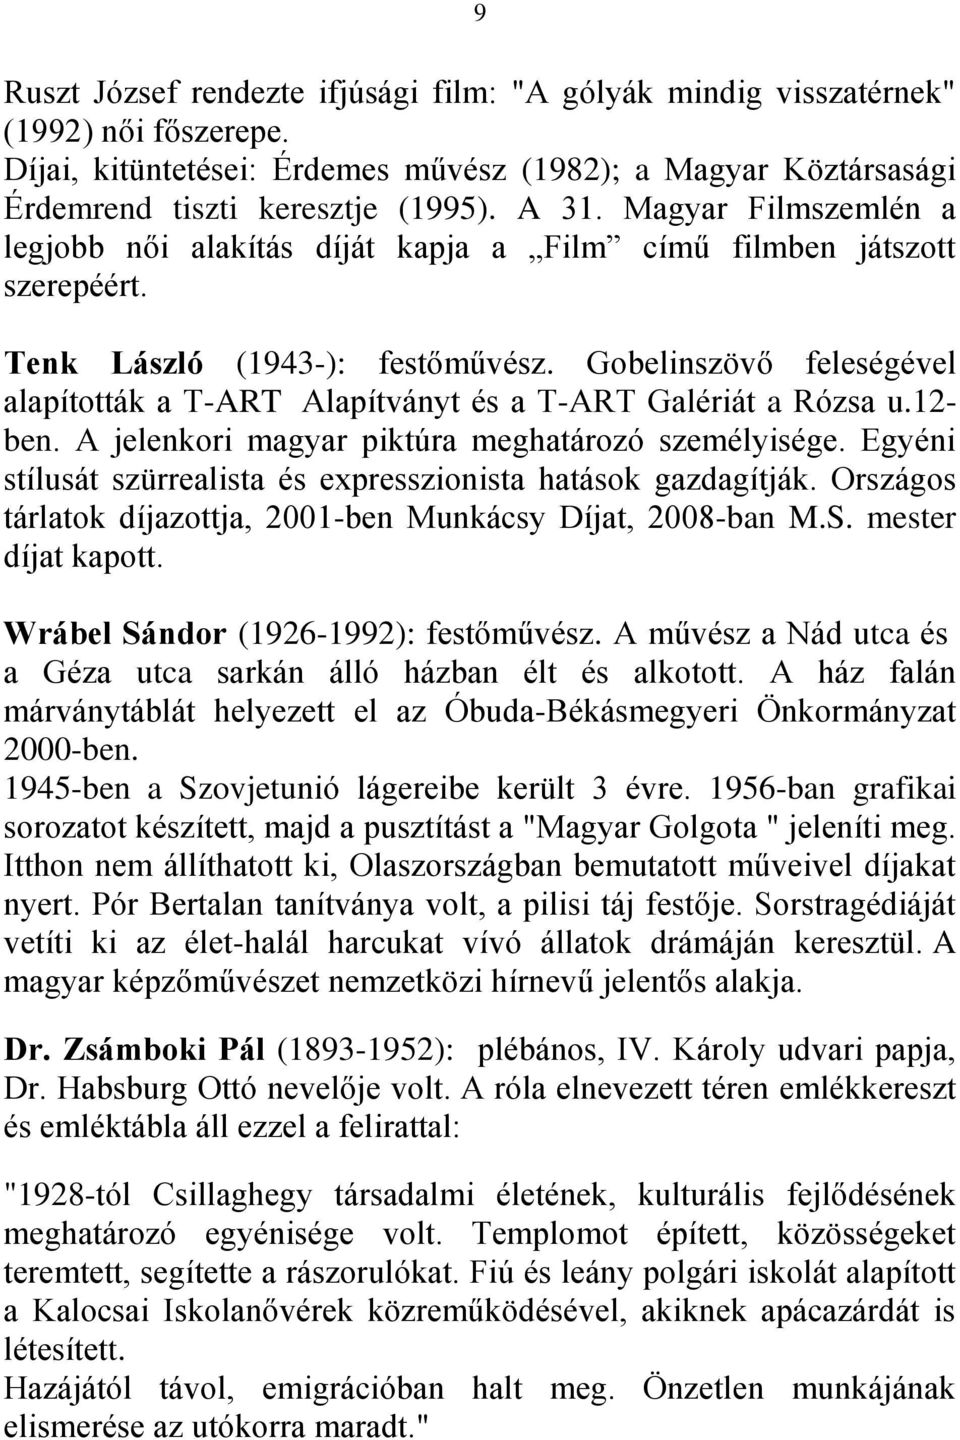 CSILLAGHEGYI NEVEZETES EMBEREK - PDF Ingyenes letöltés